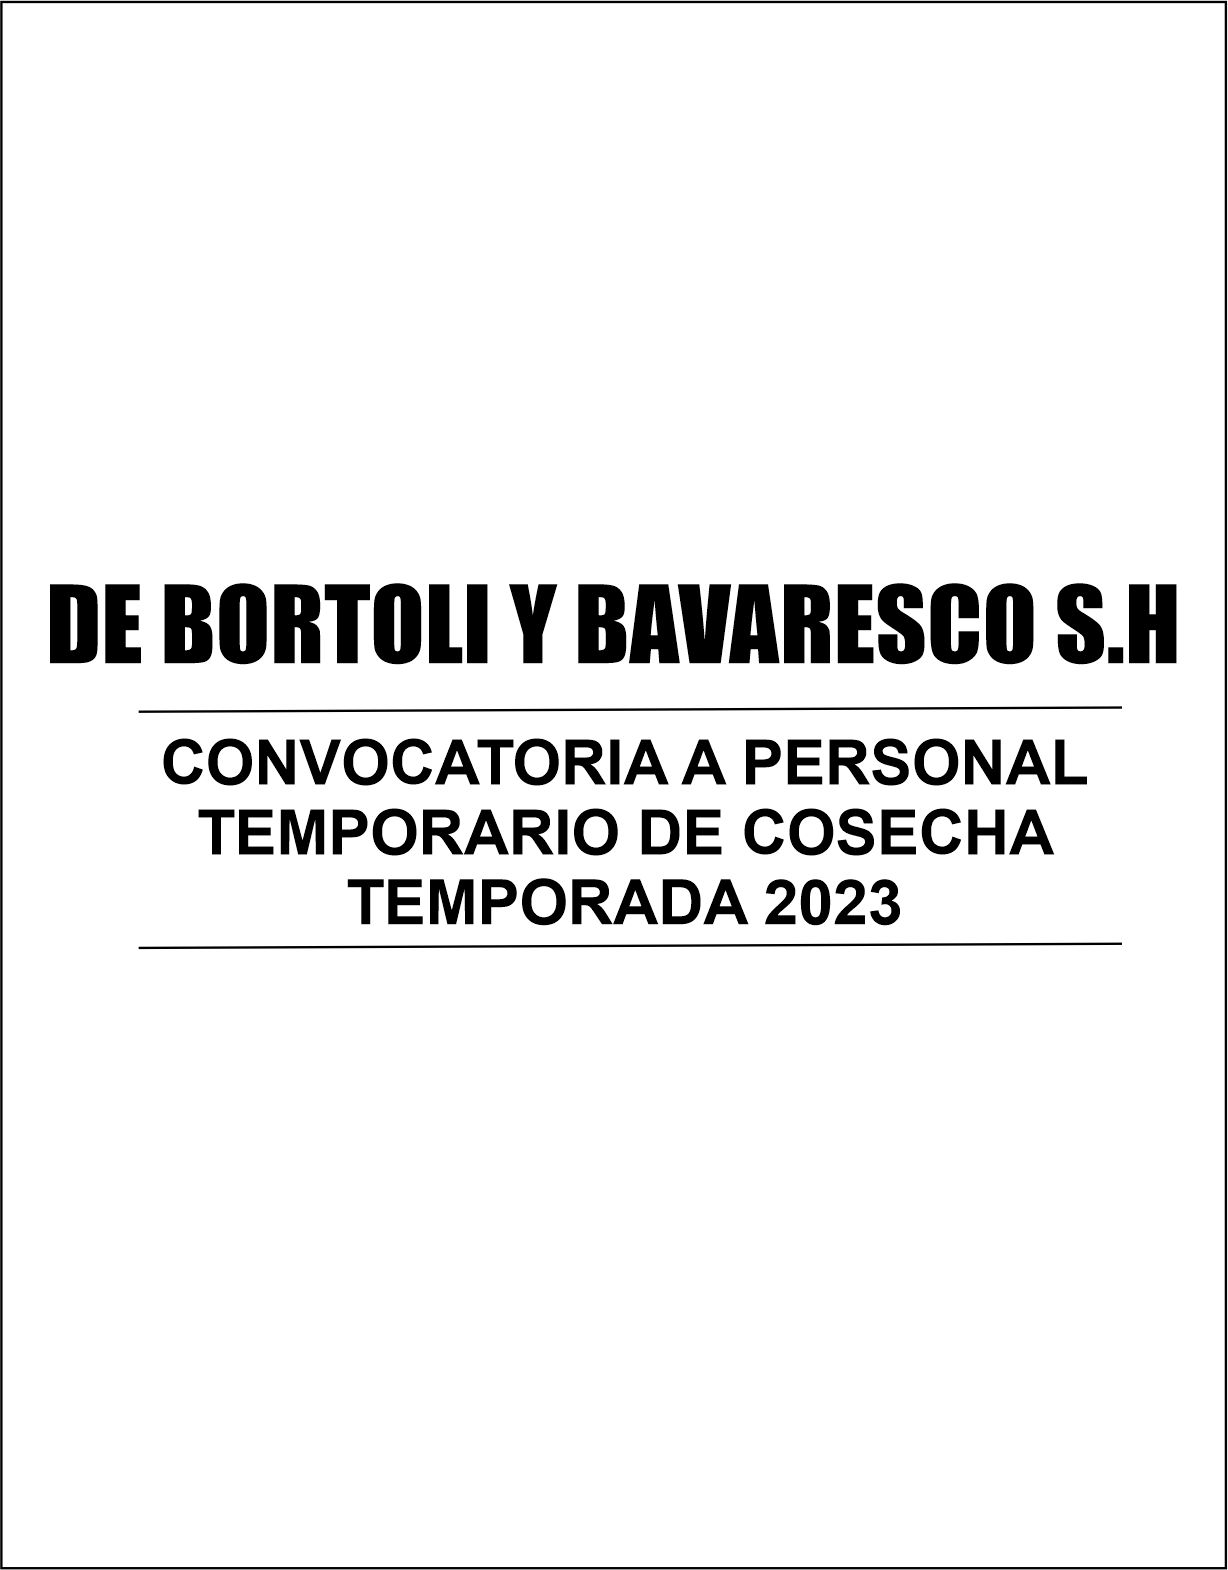 De Bortoli y Bavaresco convoca a su PERSONAL TEMPORARIO DE COSECHA 2023